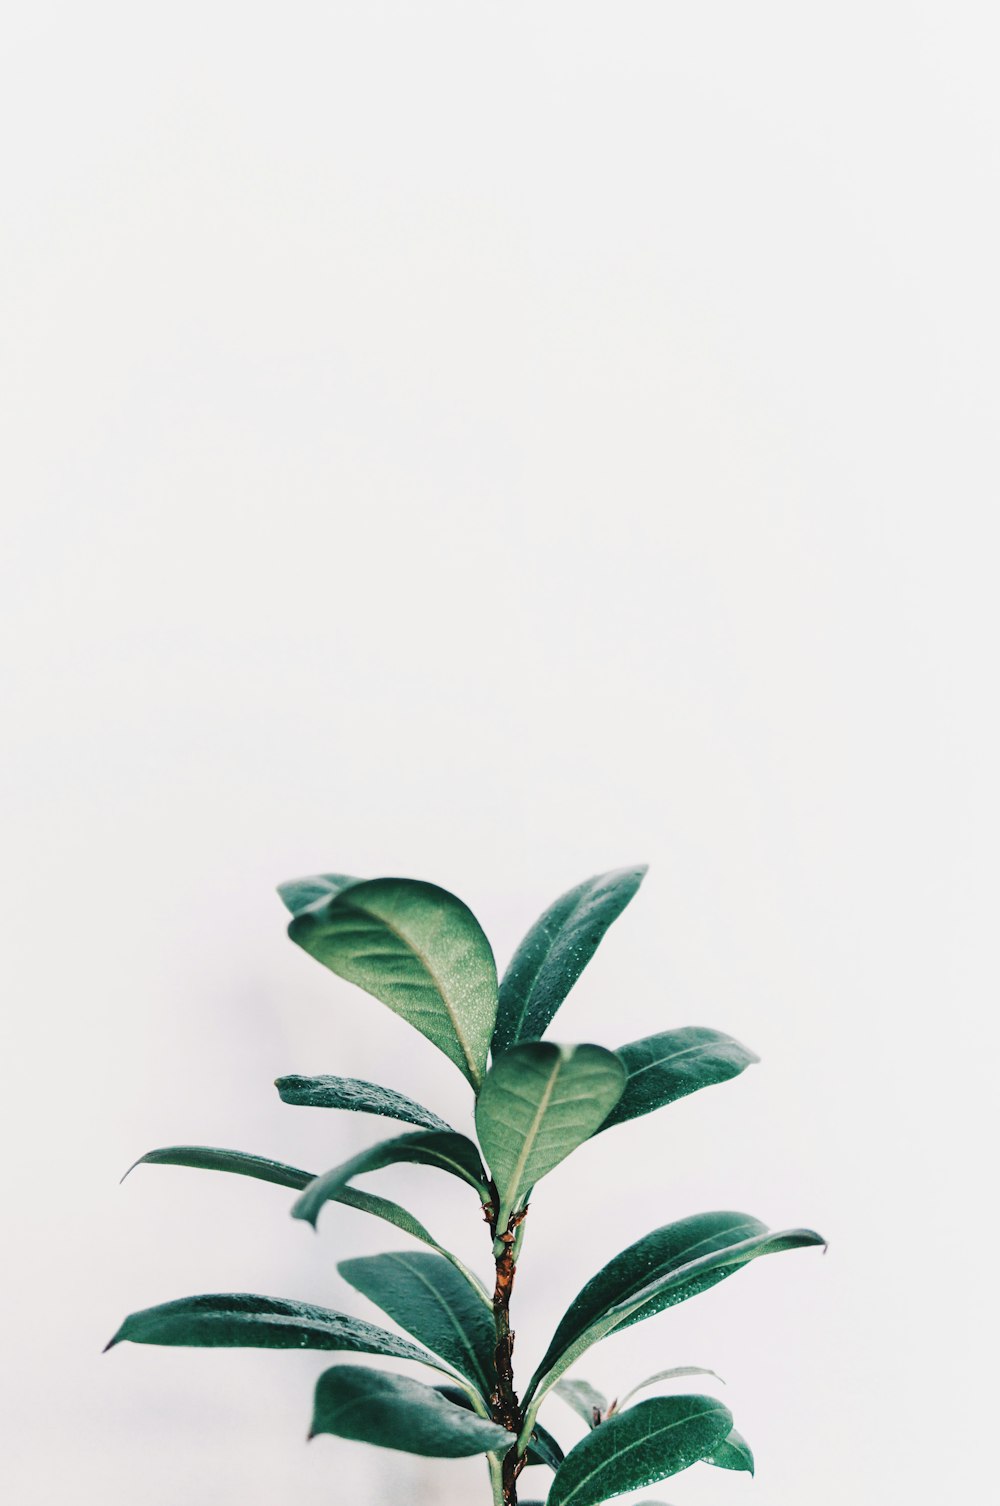 Grünblättrige Pflanze, Nahaufnahmefoto